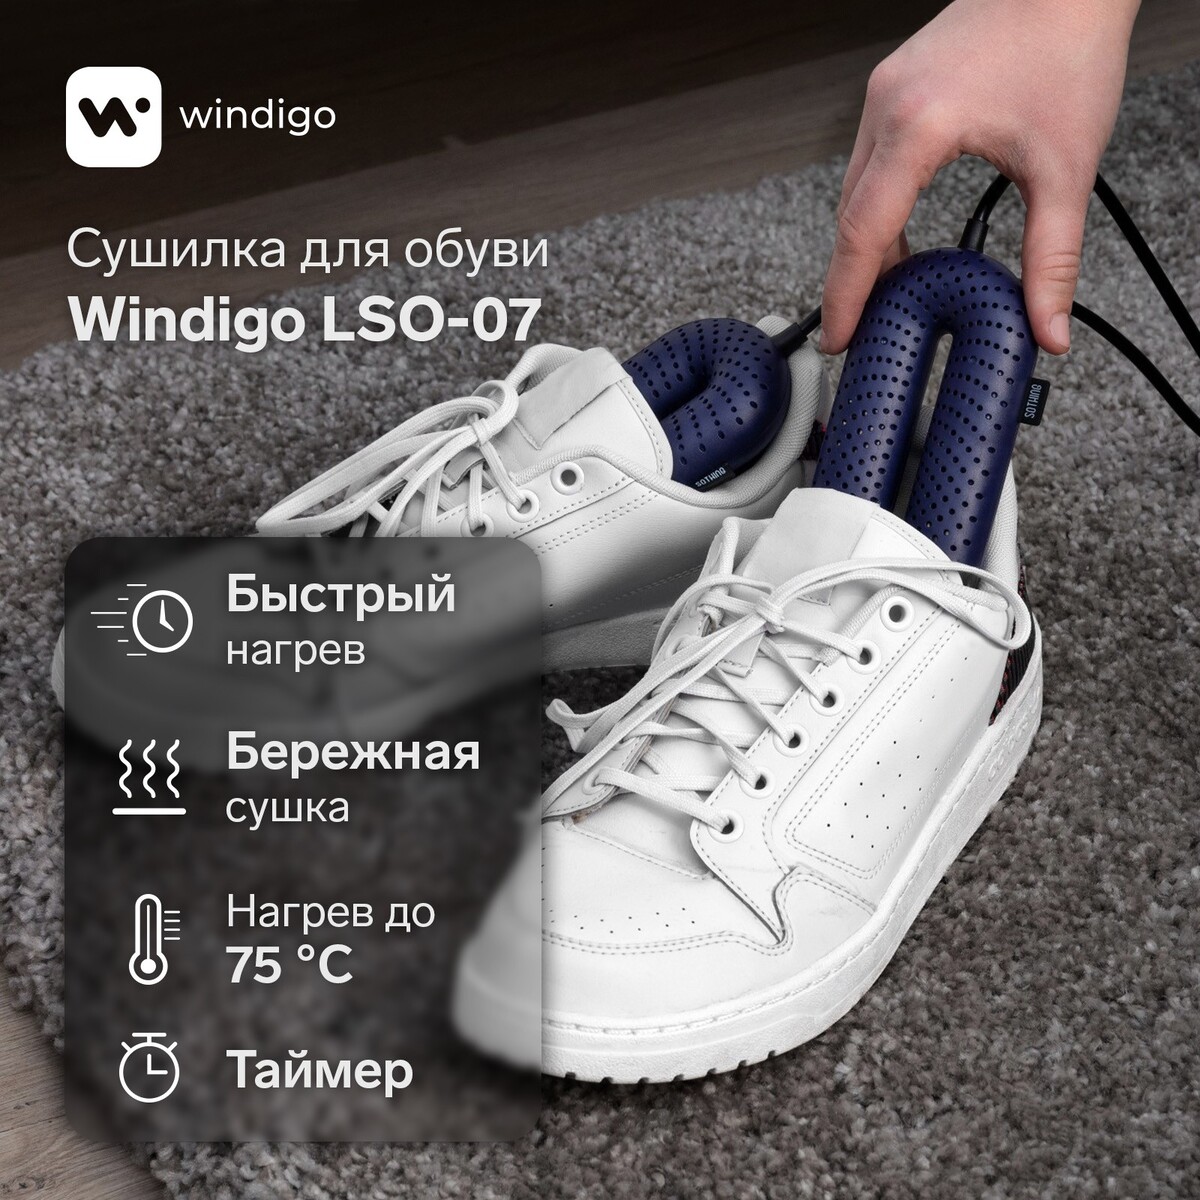 Сушилка для обуви windigo lso-07, 17 см, 20 вт, индикатор, таймер 3/6/9 часов, синяя timson сушилка для обуви противогрибковая